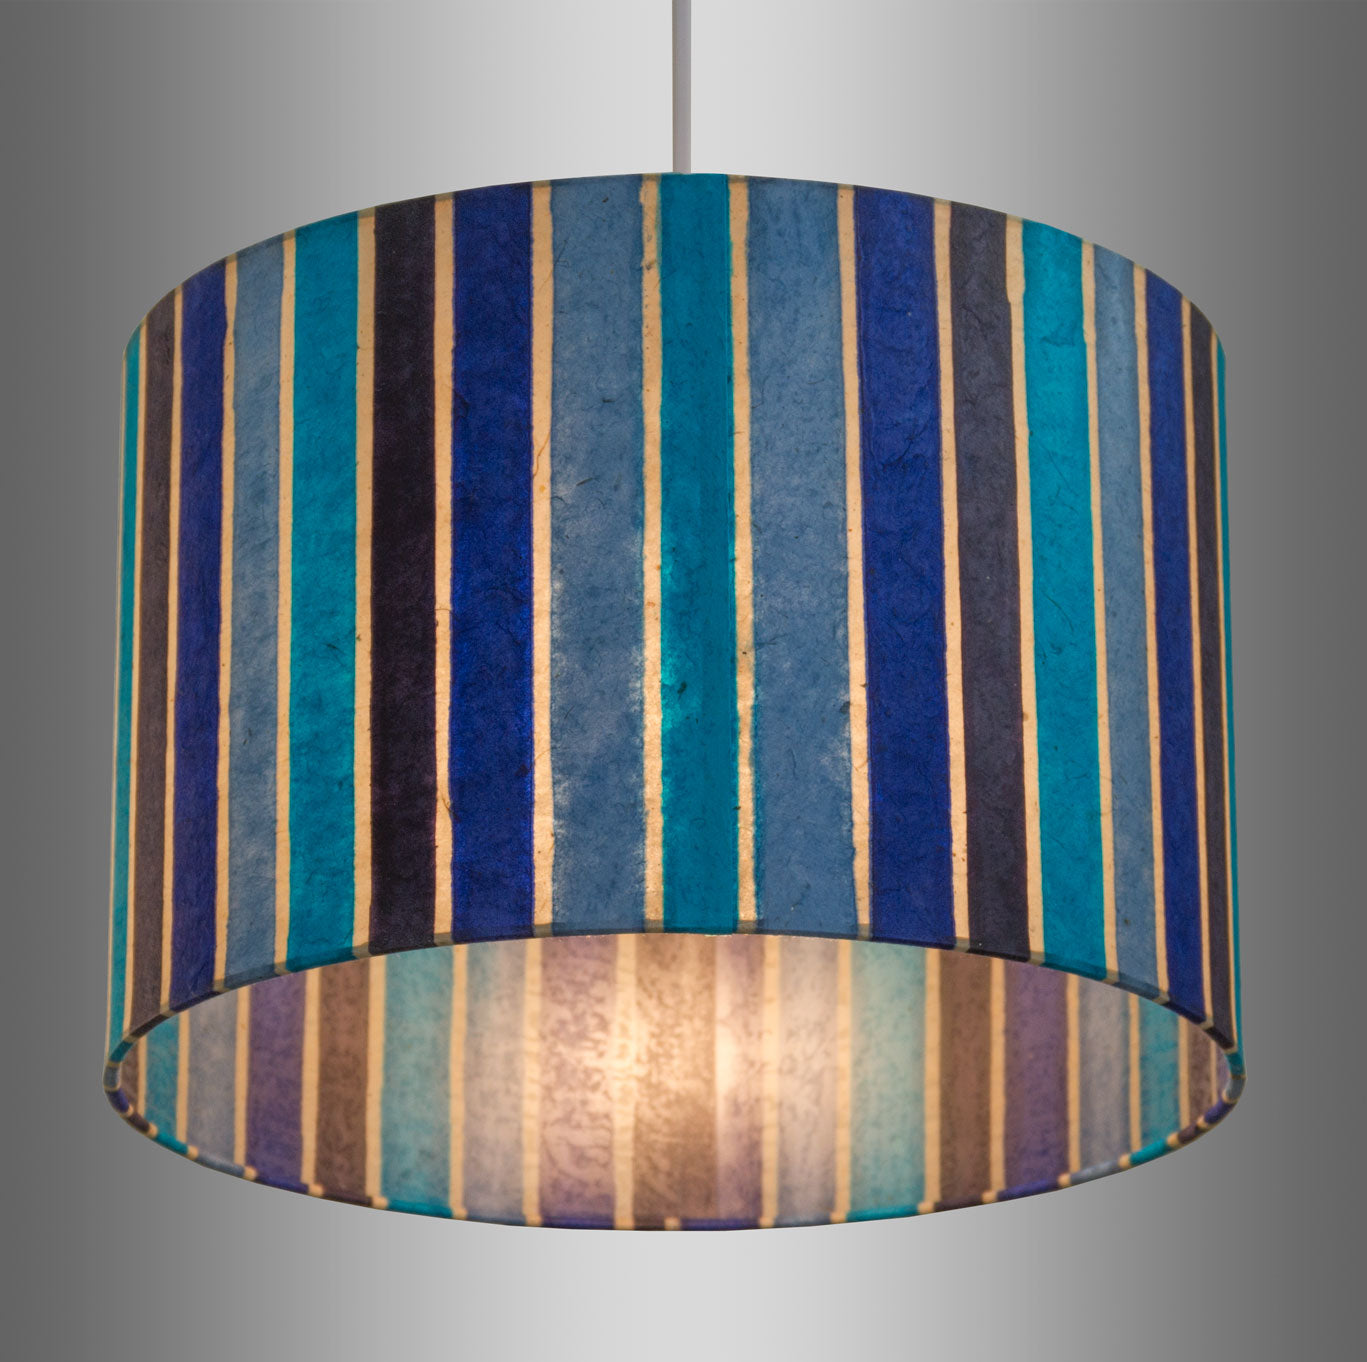 Drum Lamp Shade - P05 - Batik Stripes Blue, 70cm(d) x 30cm(h)